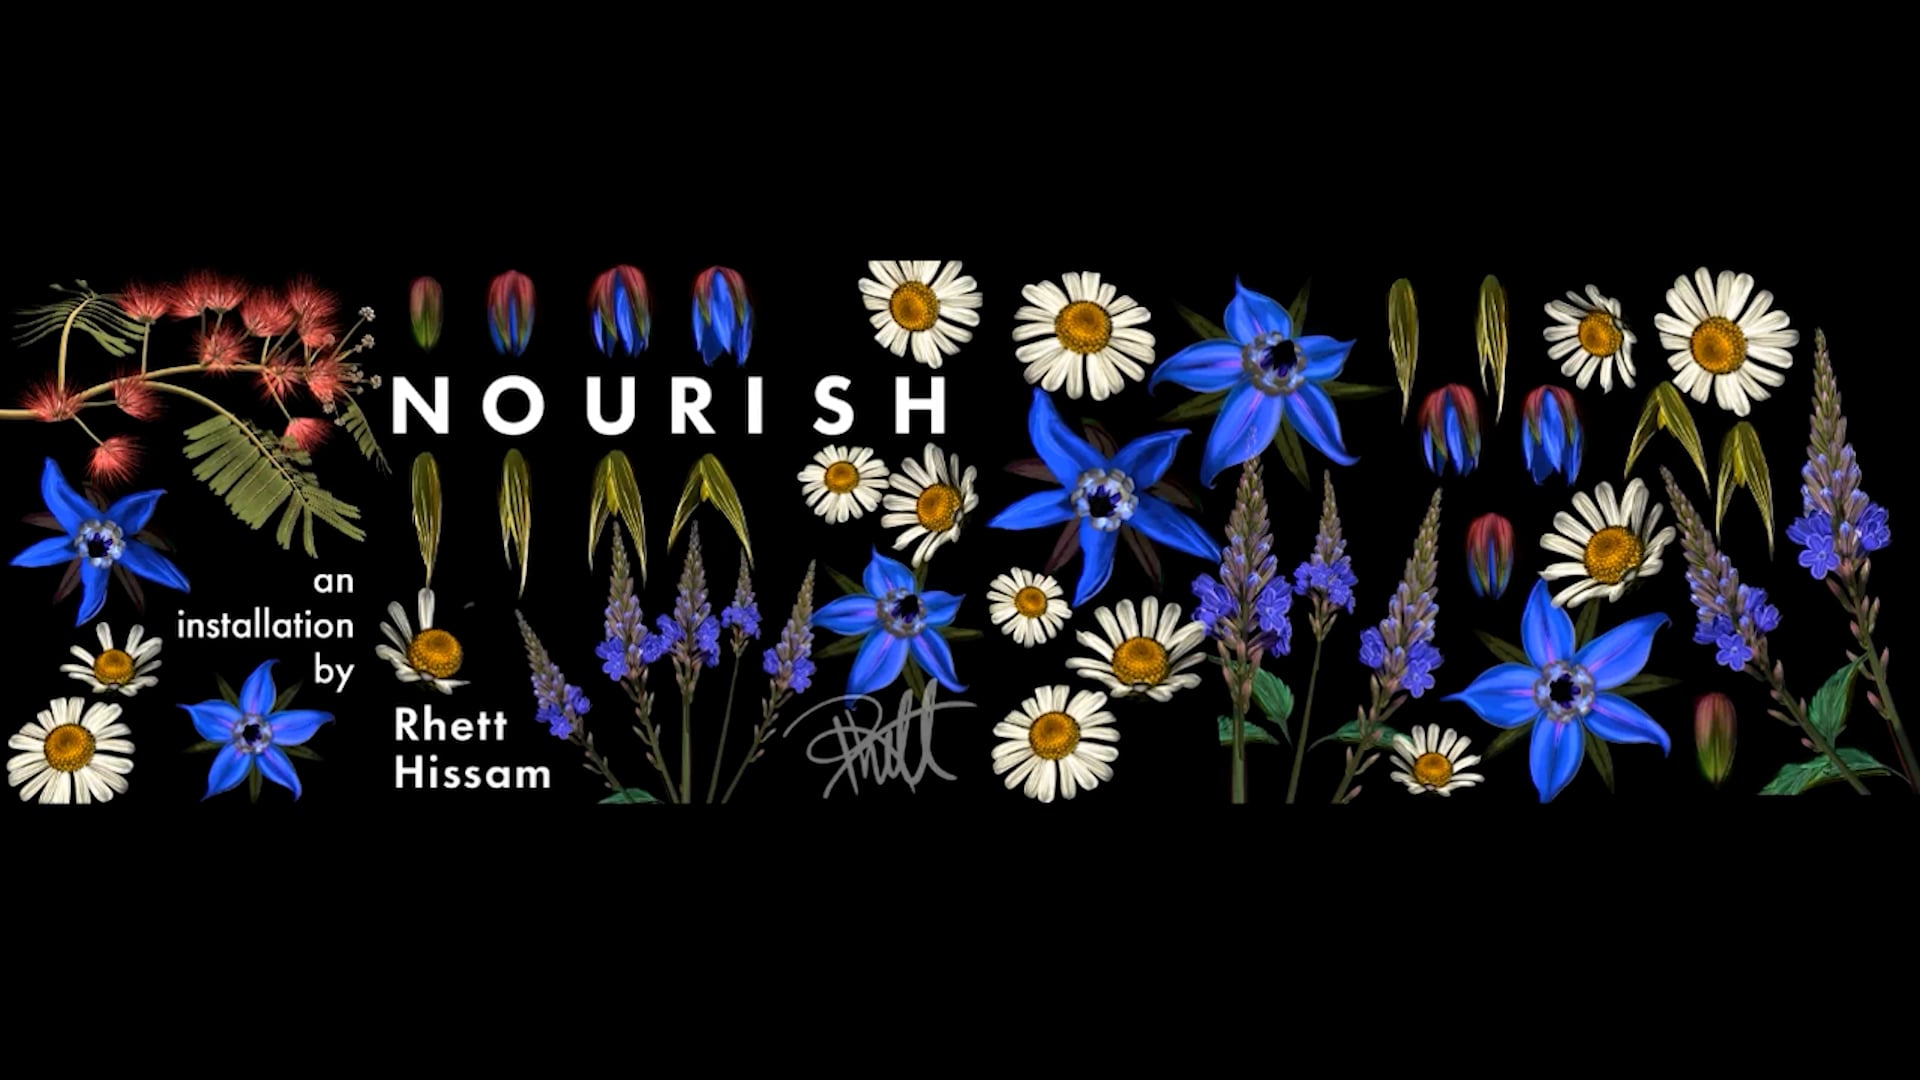 Nourish by Rhett Hissam